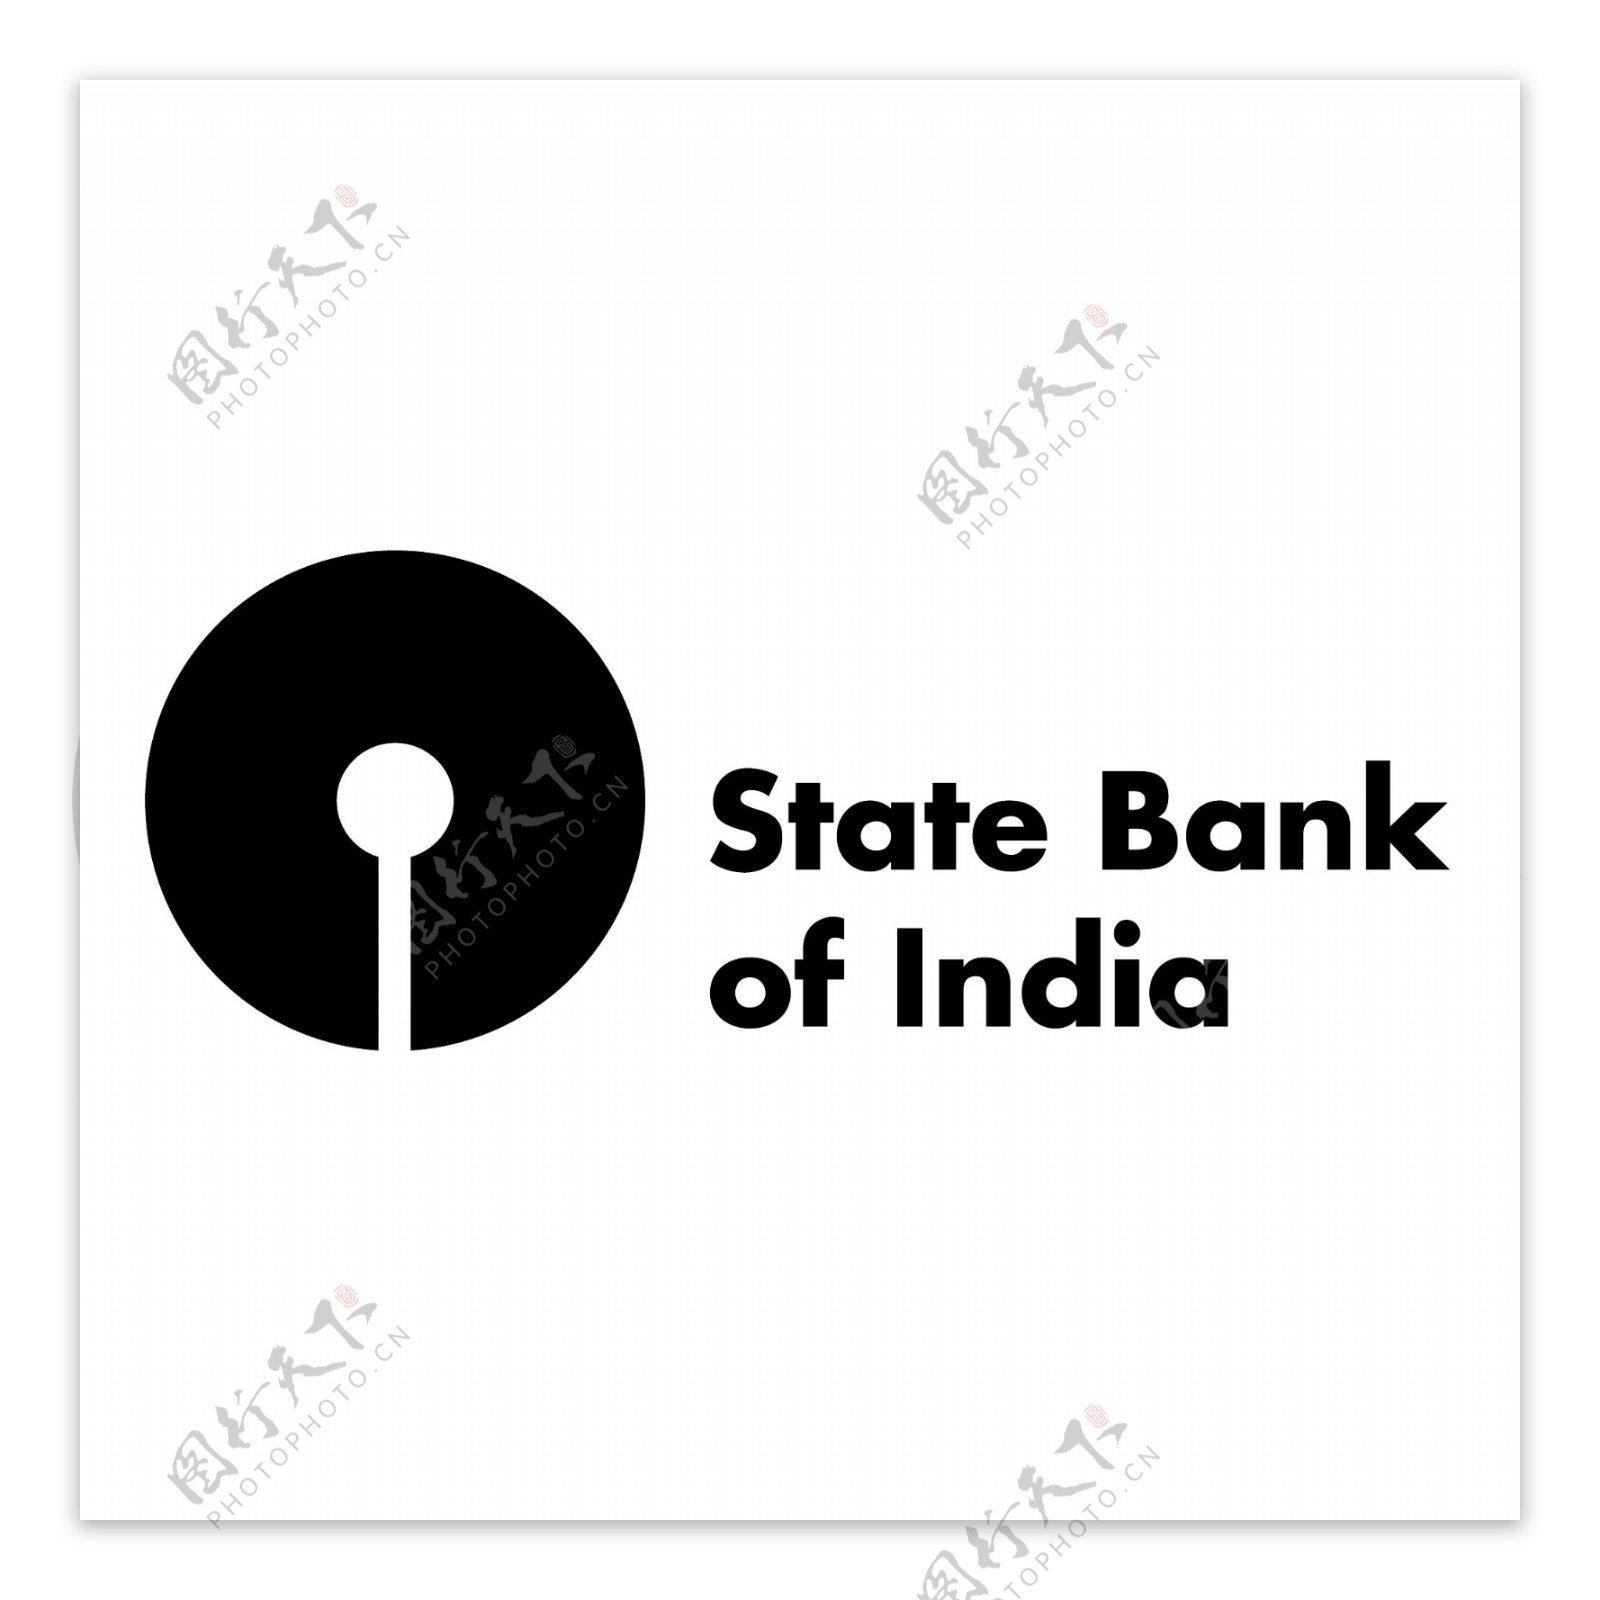 印度国家银行